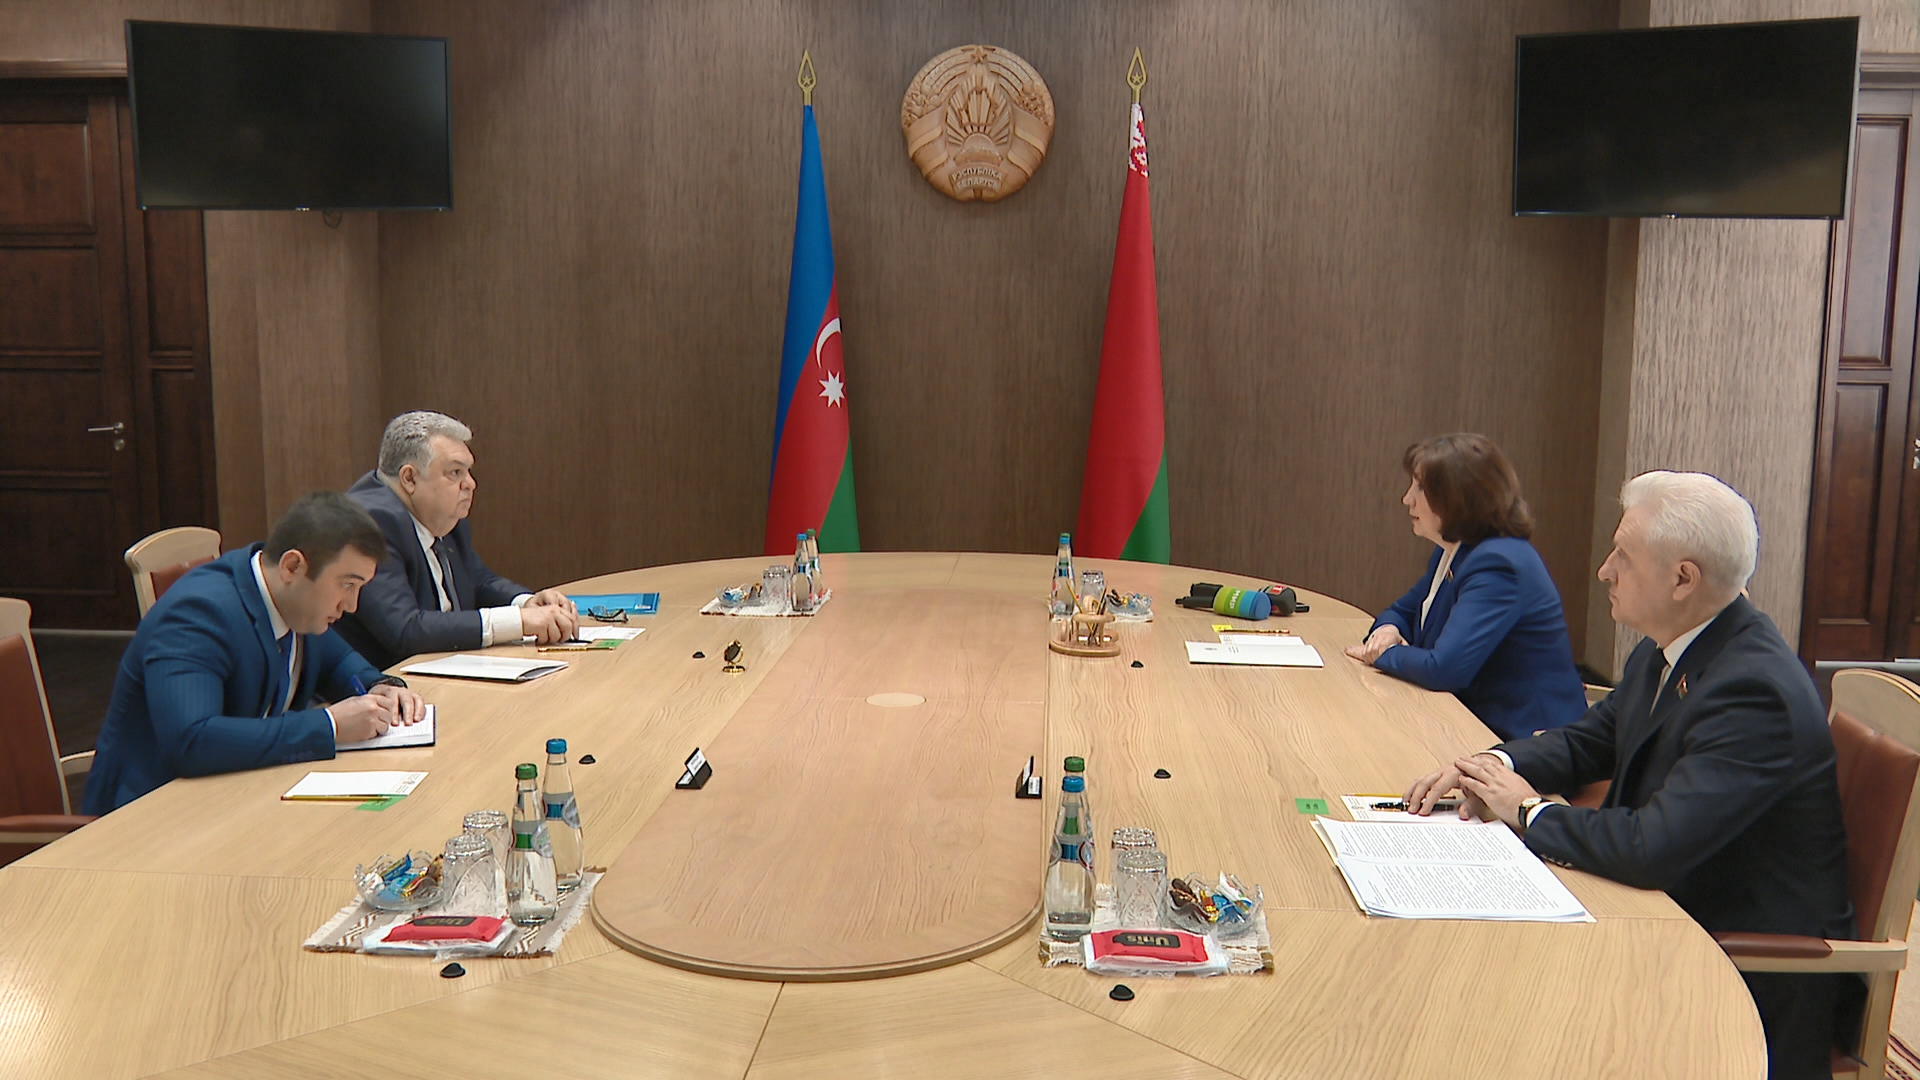 Н.Кочанова отметила высокий уровень политического диалога Беларуси и Азербайджана